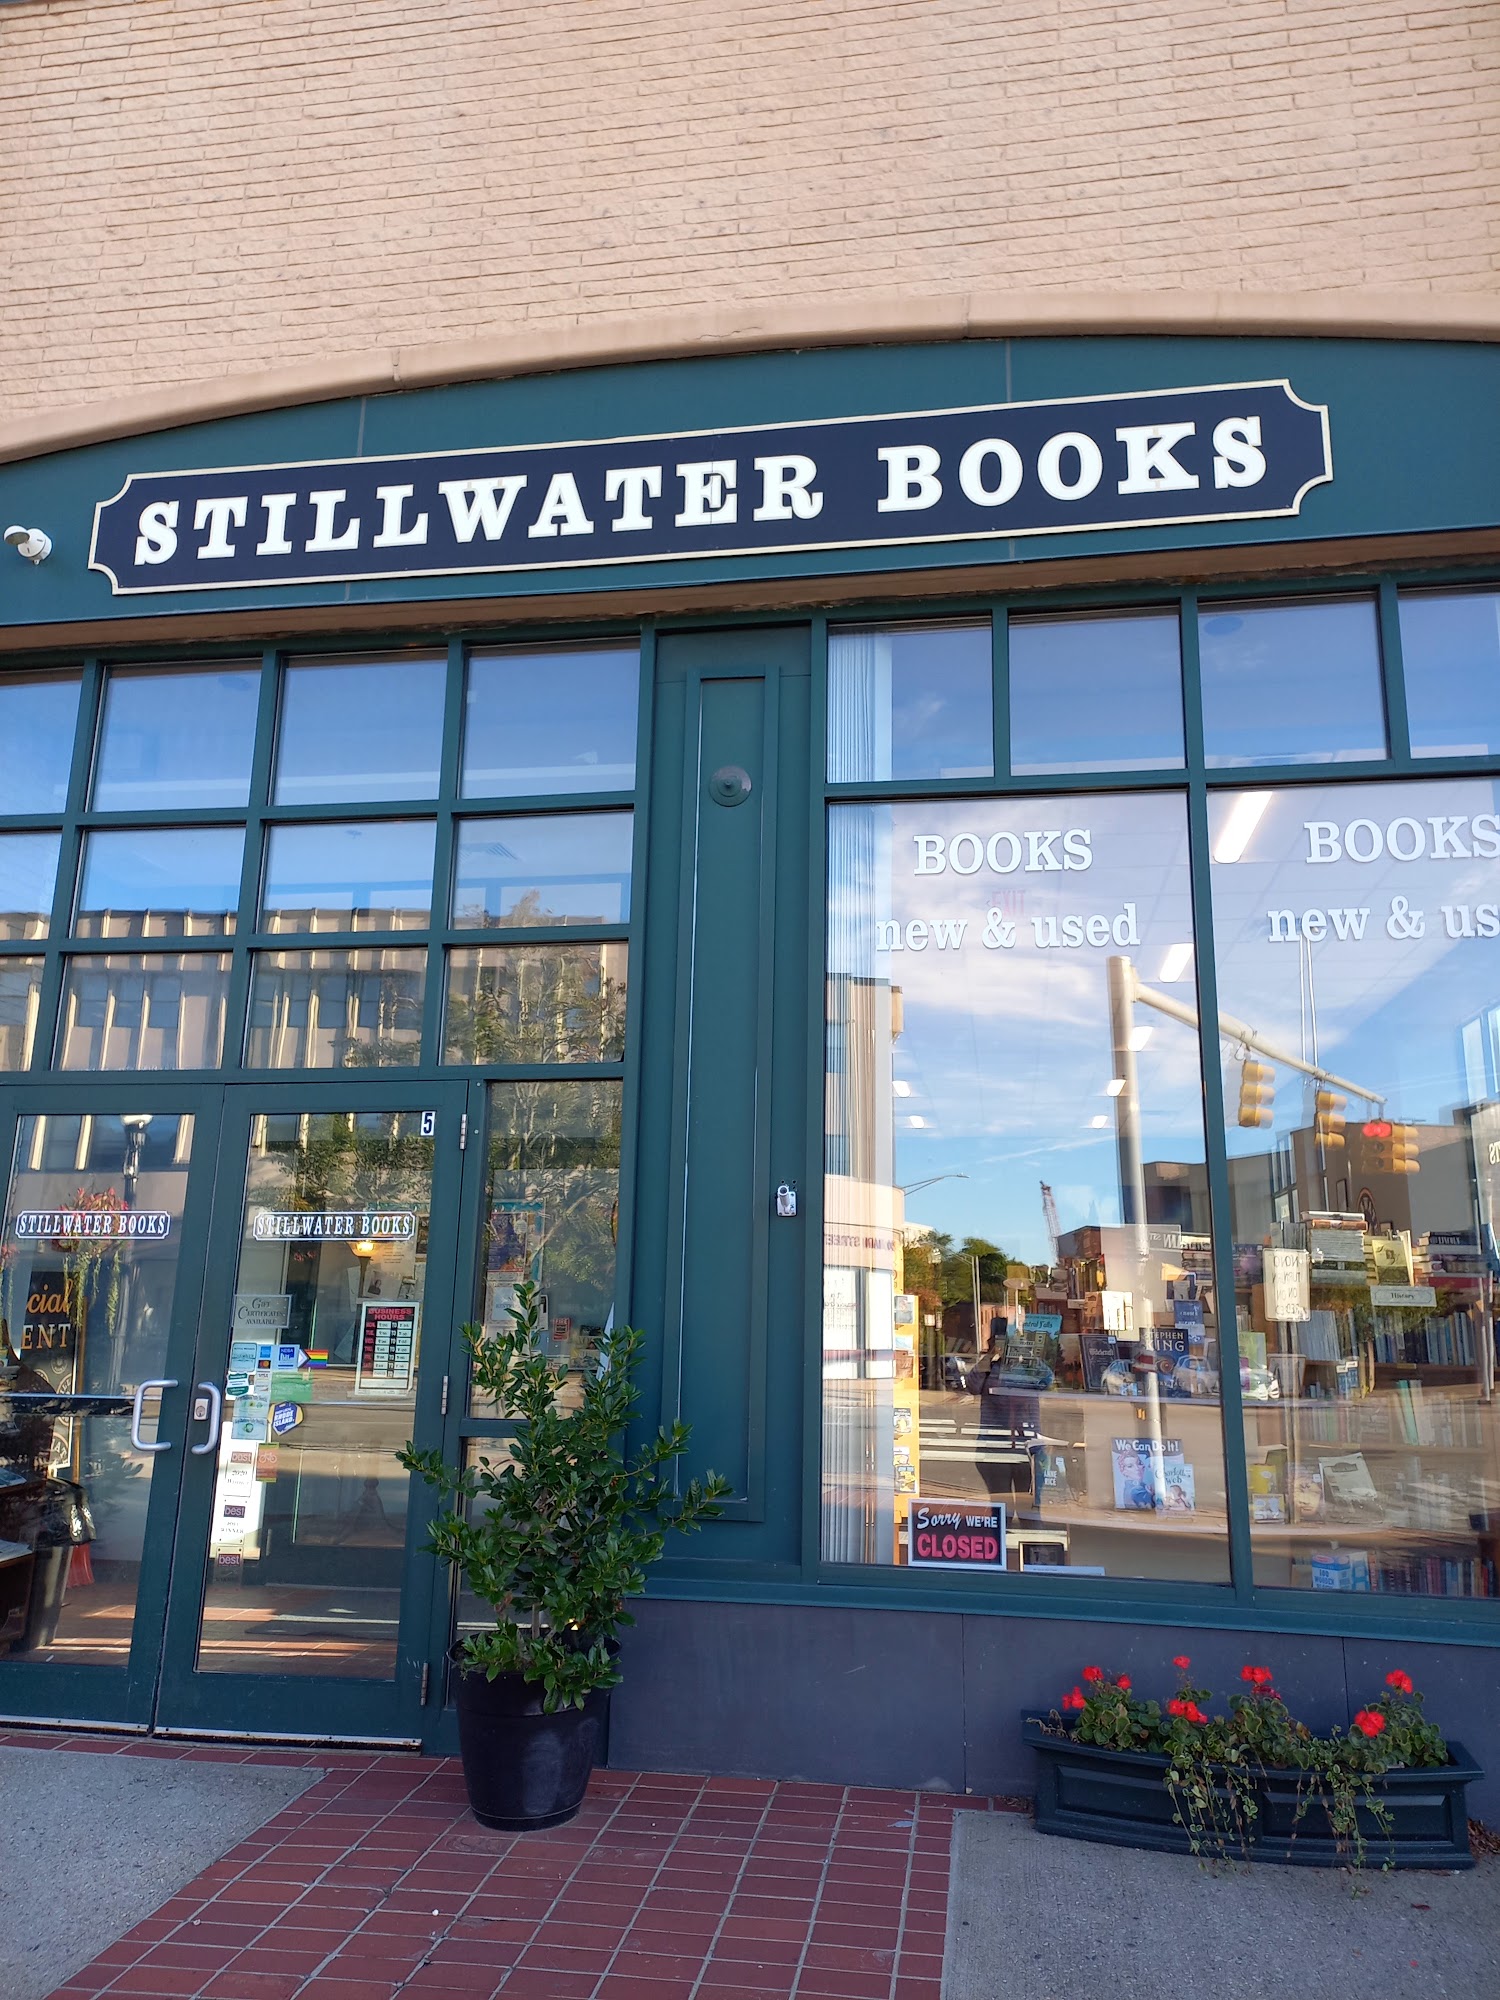 Stillwater Books